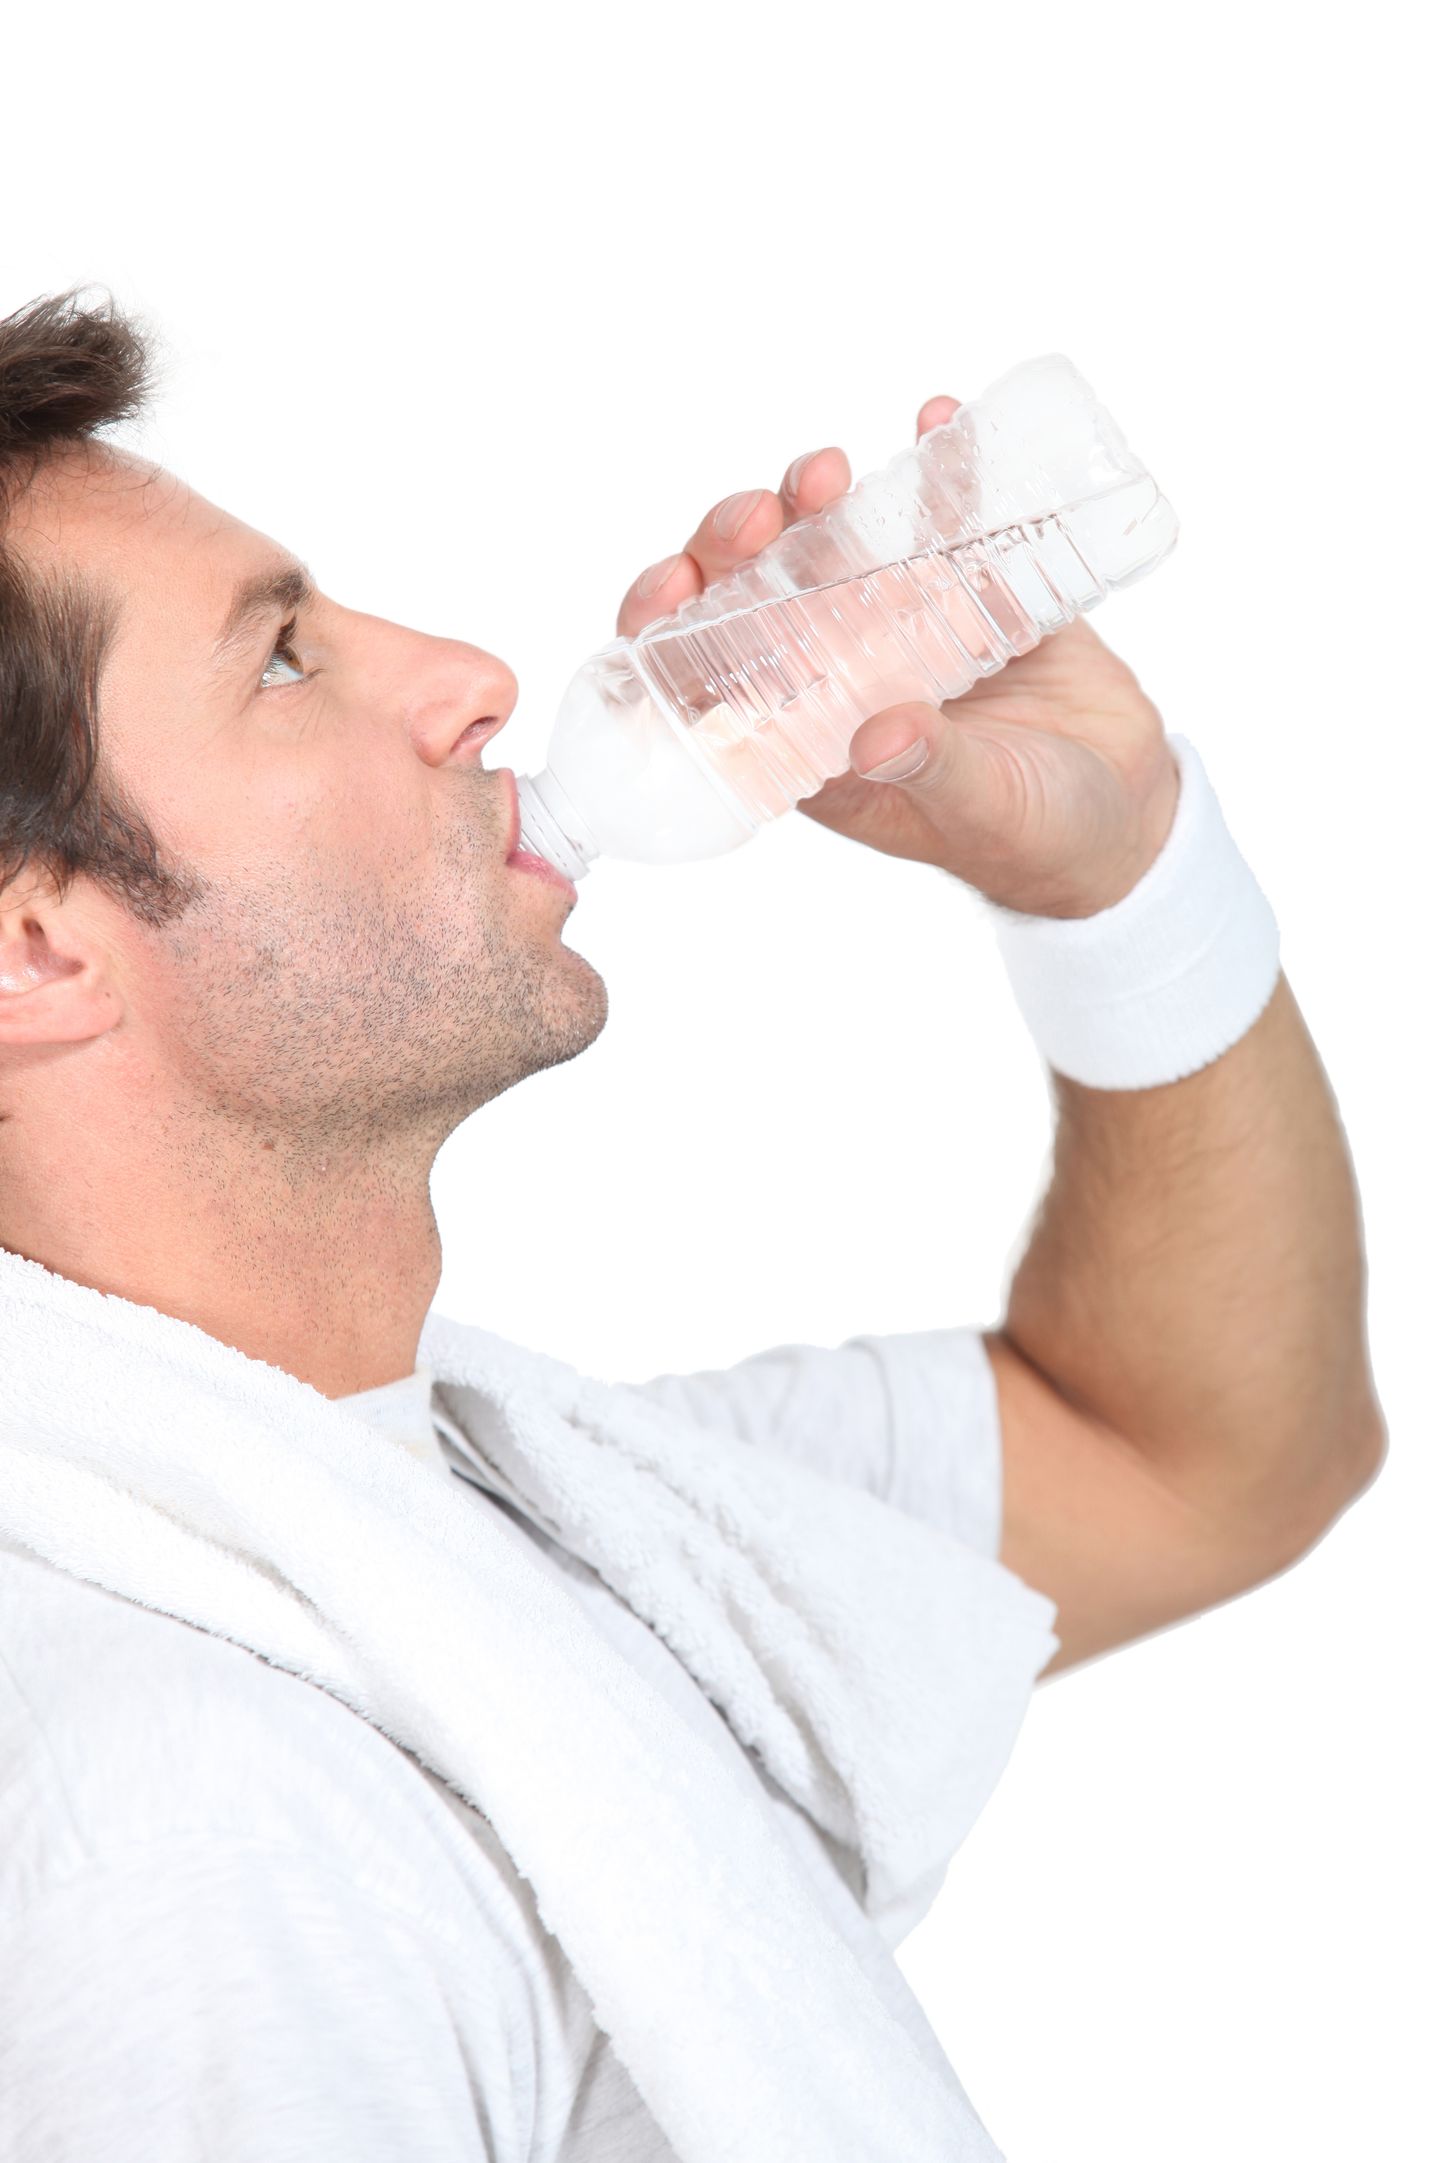 Lühikese ajaga väga suure koguse vee joomine uhub verest naatriumi välja.